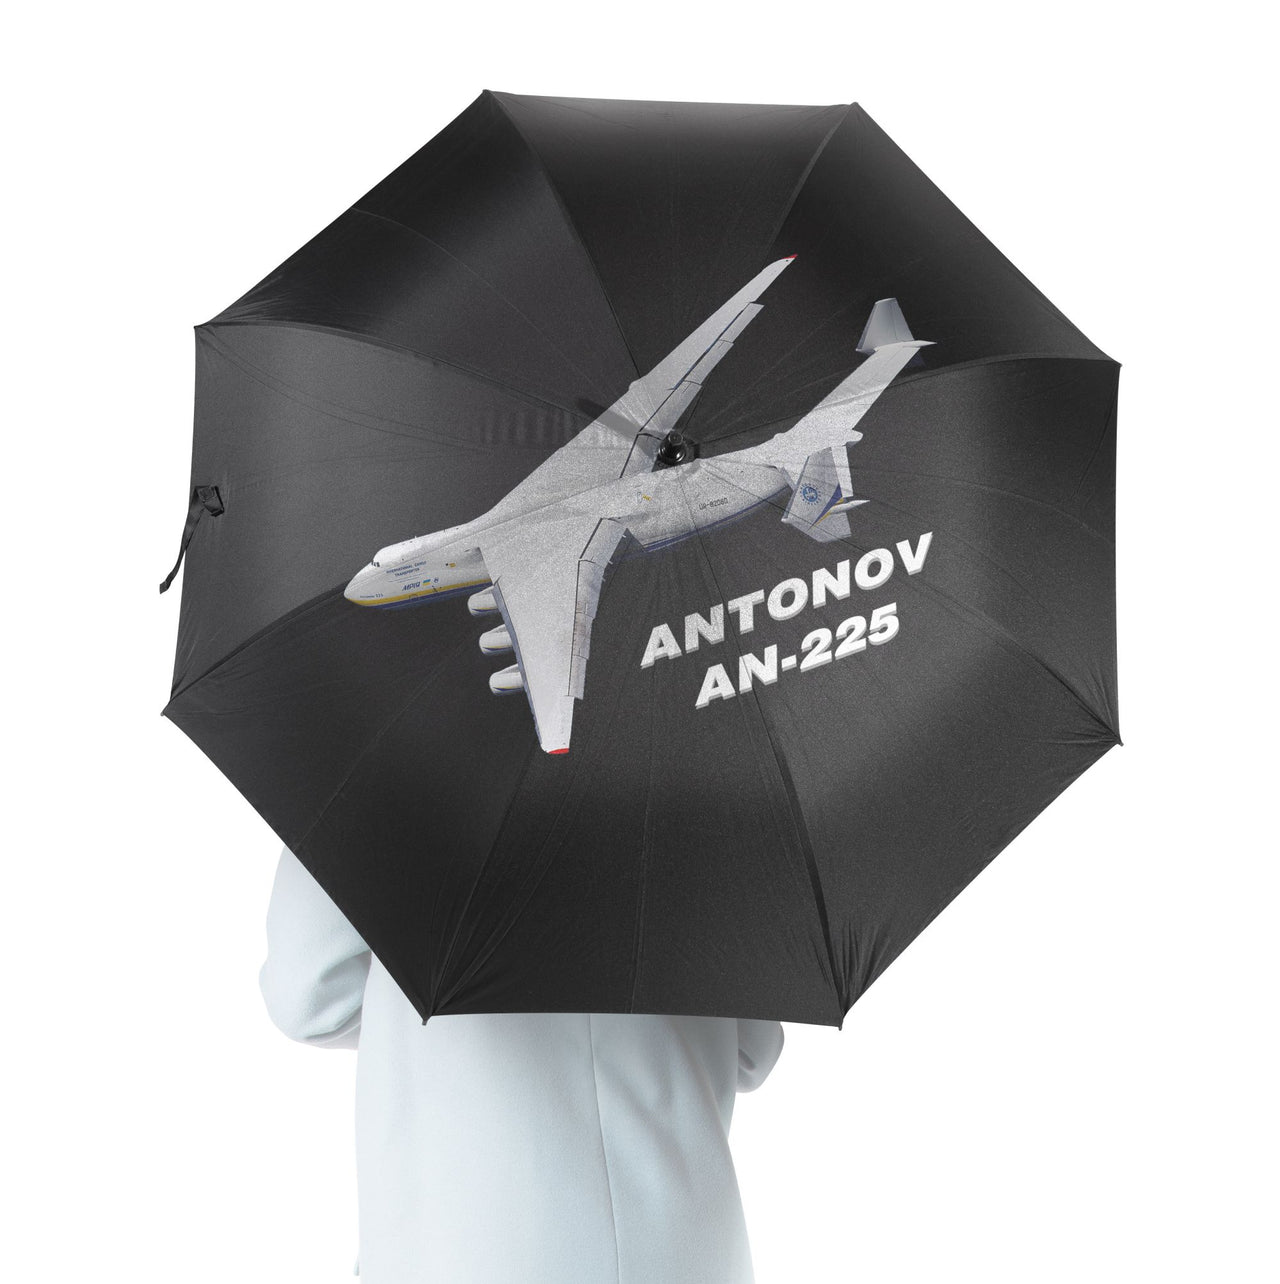 Antonov AN-225 (10) Designed Umbrella